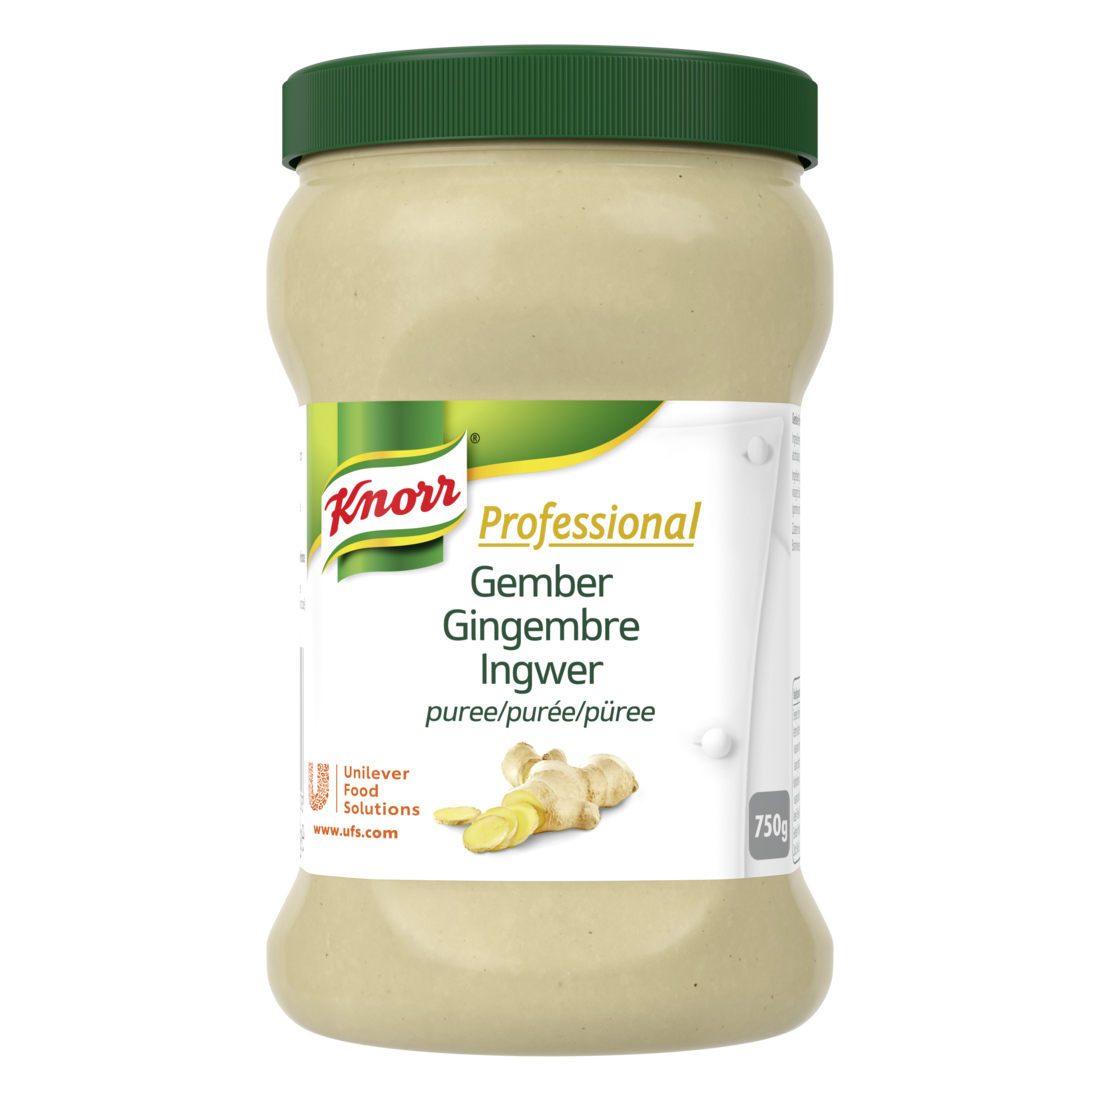 Knorr Professional Purée de gingembre Pot 750g - Knorr Purée d’Épices parfume et personnalise vos plats.